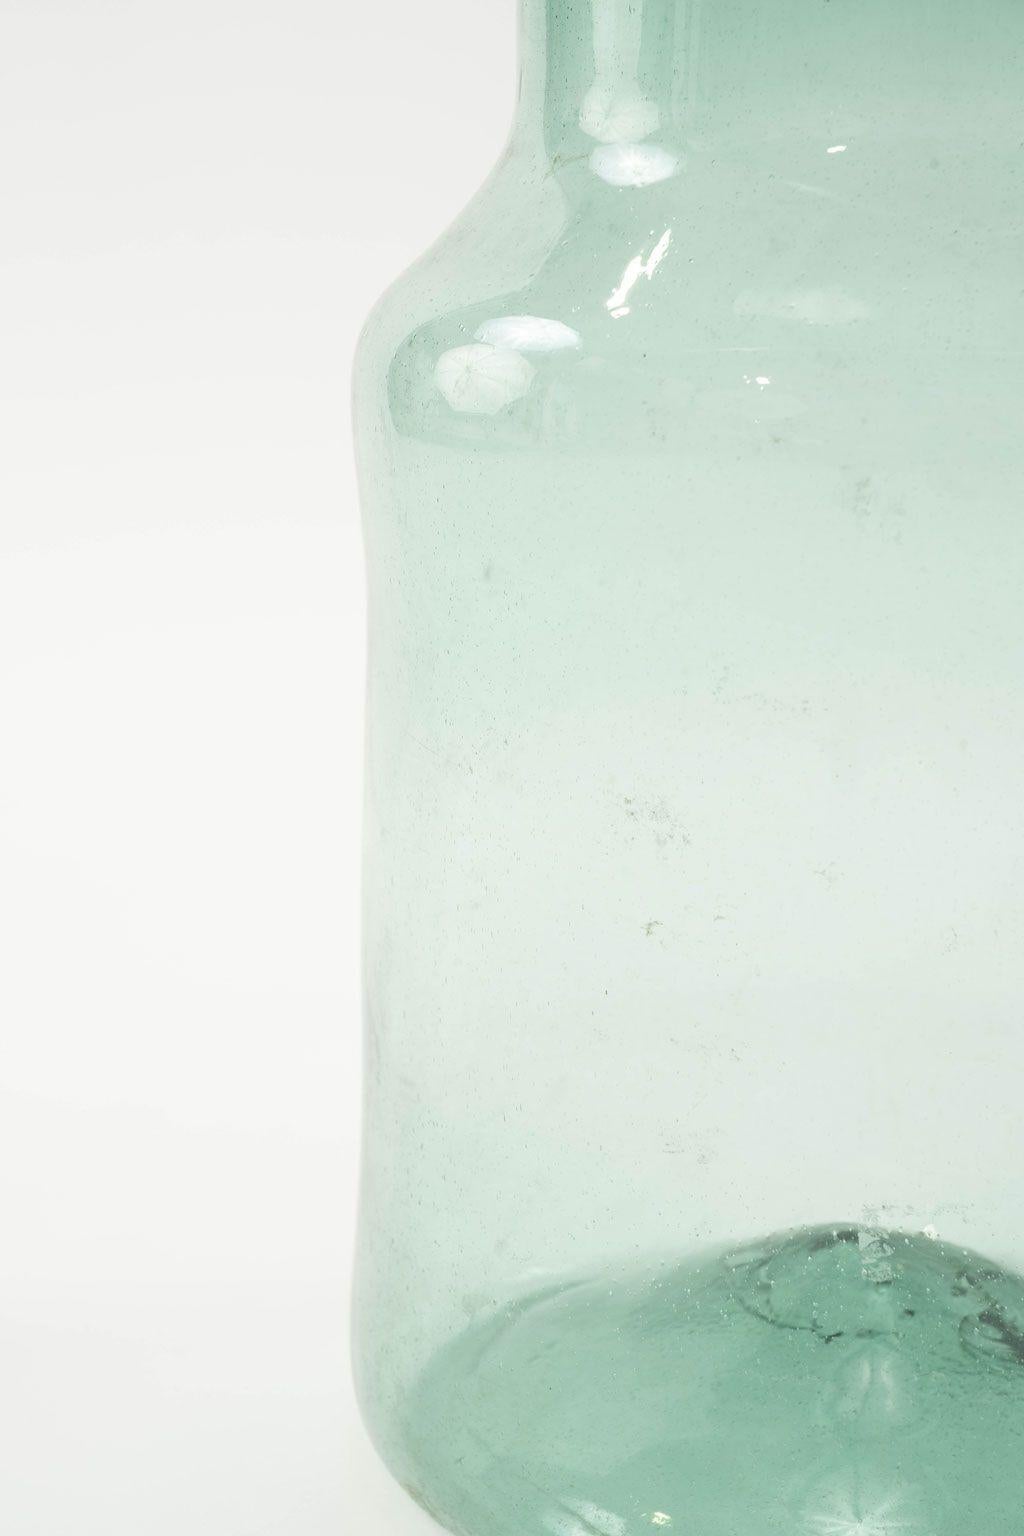 Großes mundgeblasenes antikes Glasgefäß mit bläulich-grüner Tönung. Drei davon sind in verschiedenen Größen und Formen erhältlich (siehe die letzten drei Bilder). Sie werden einzeln verkauft und kosten jeweils 795 $.